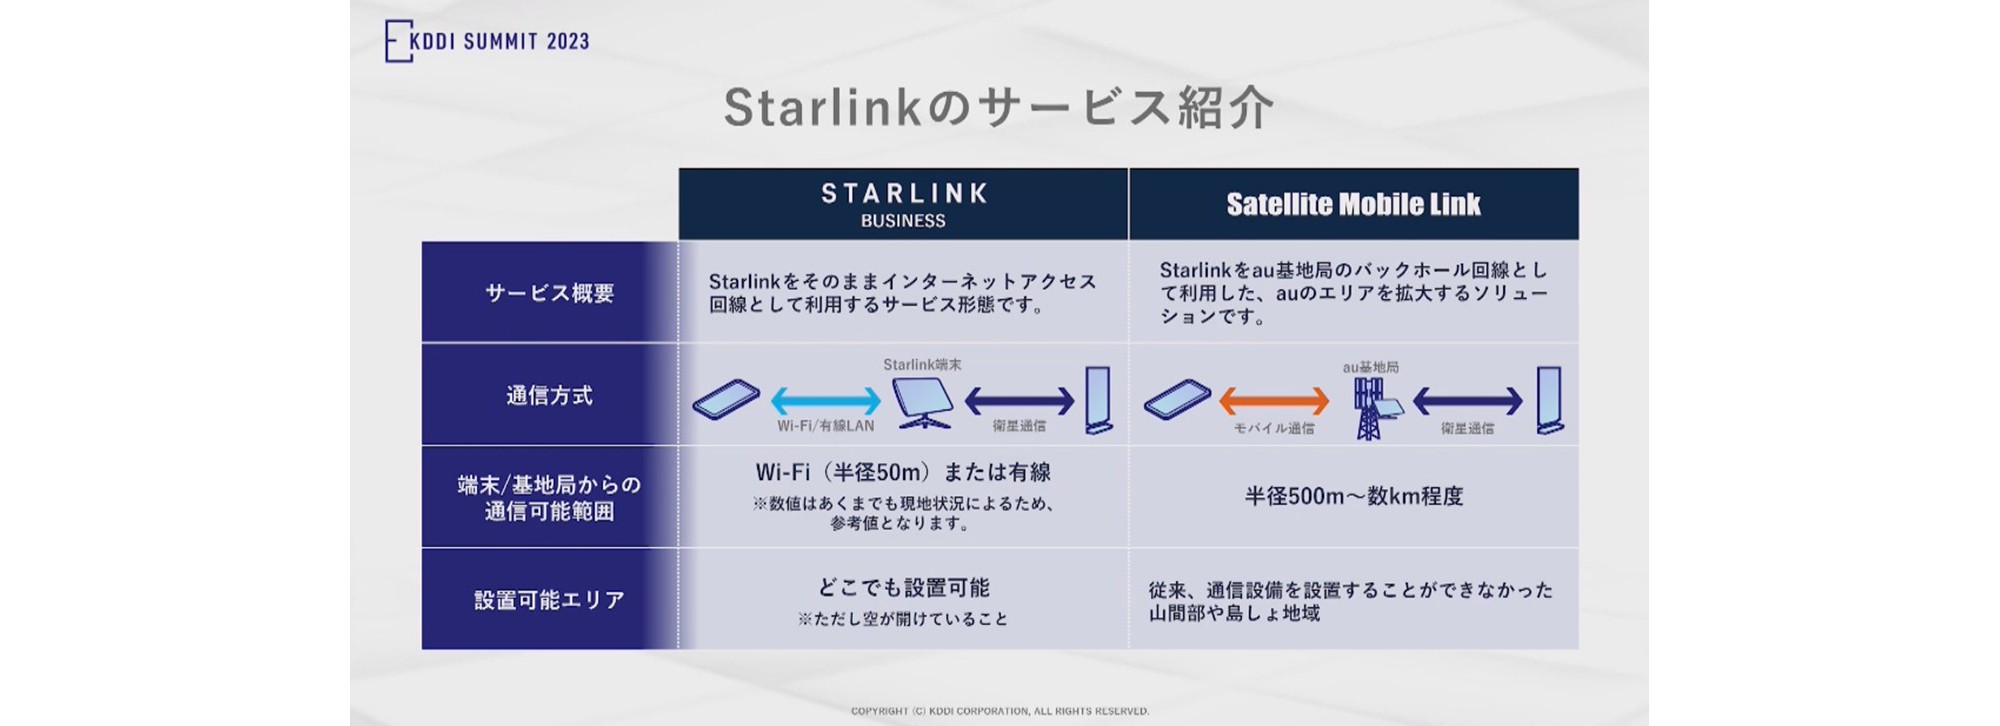 Starlinkのサービス紹介「STARLINK BUSINESS」サービス概要：Starlink をそのままインターネットアクセス回線として利用するサービス形態です。通信方式：Wi-Fi有線LAN、Starlink端末、衛星通信。端末/基地局からの通信可能範囲：Wi-Fi有線LAN：Wi-Fi (半径50m)または有線 ※数値はあくまでも現地状況によるため、参考値となります。設置可能エリア：どこでも設置可能 ※ただし空が開けていること。「Satellite Mobile Link」サービス概要：Starlink をau基地局のバックホール回線として利用した、auのエリアを拡大するソリューションです。通信方式：モバイル通信、au基地局、衛星通信。端末/基地局からの通信可能範囲：半径500m～数km程度。設置可能エリア：従来、通信設備を設置することができなかった山間部や島しょ地域